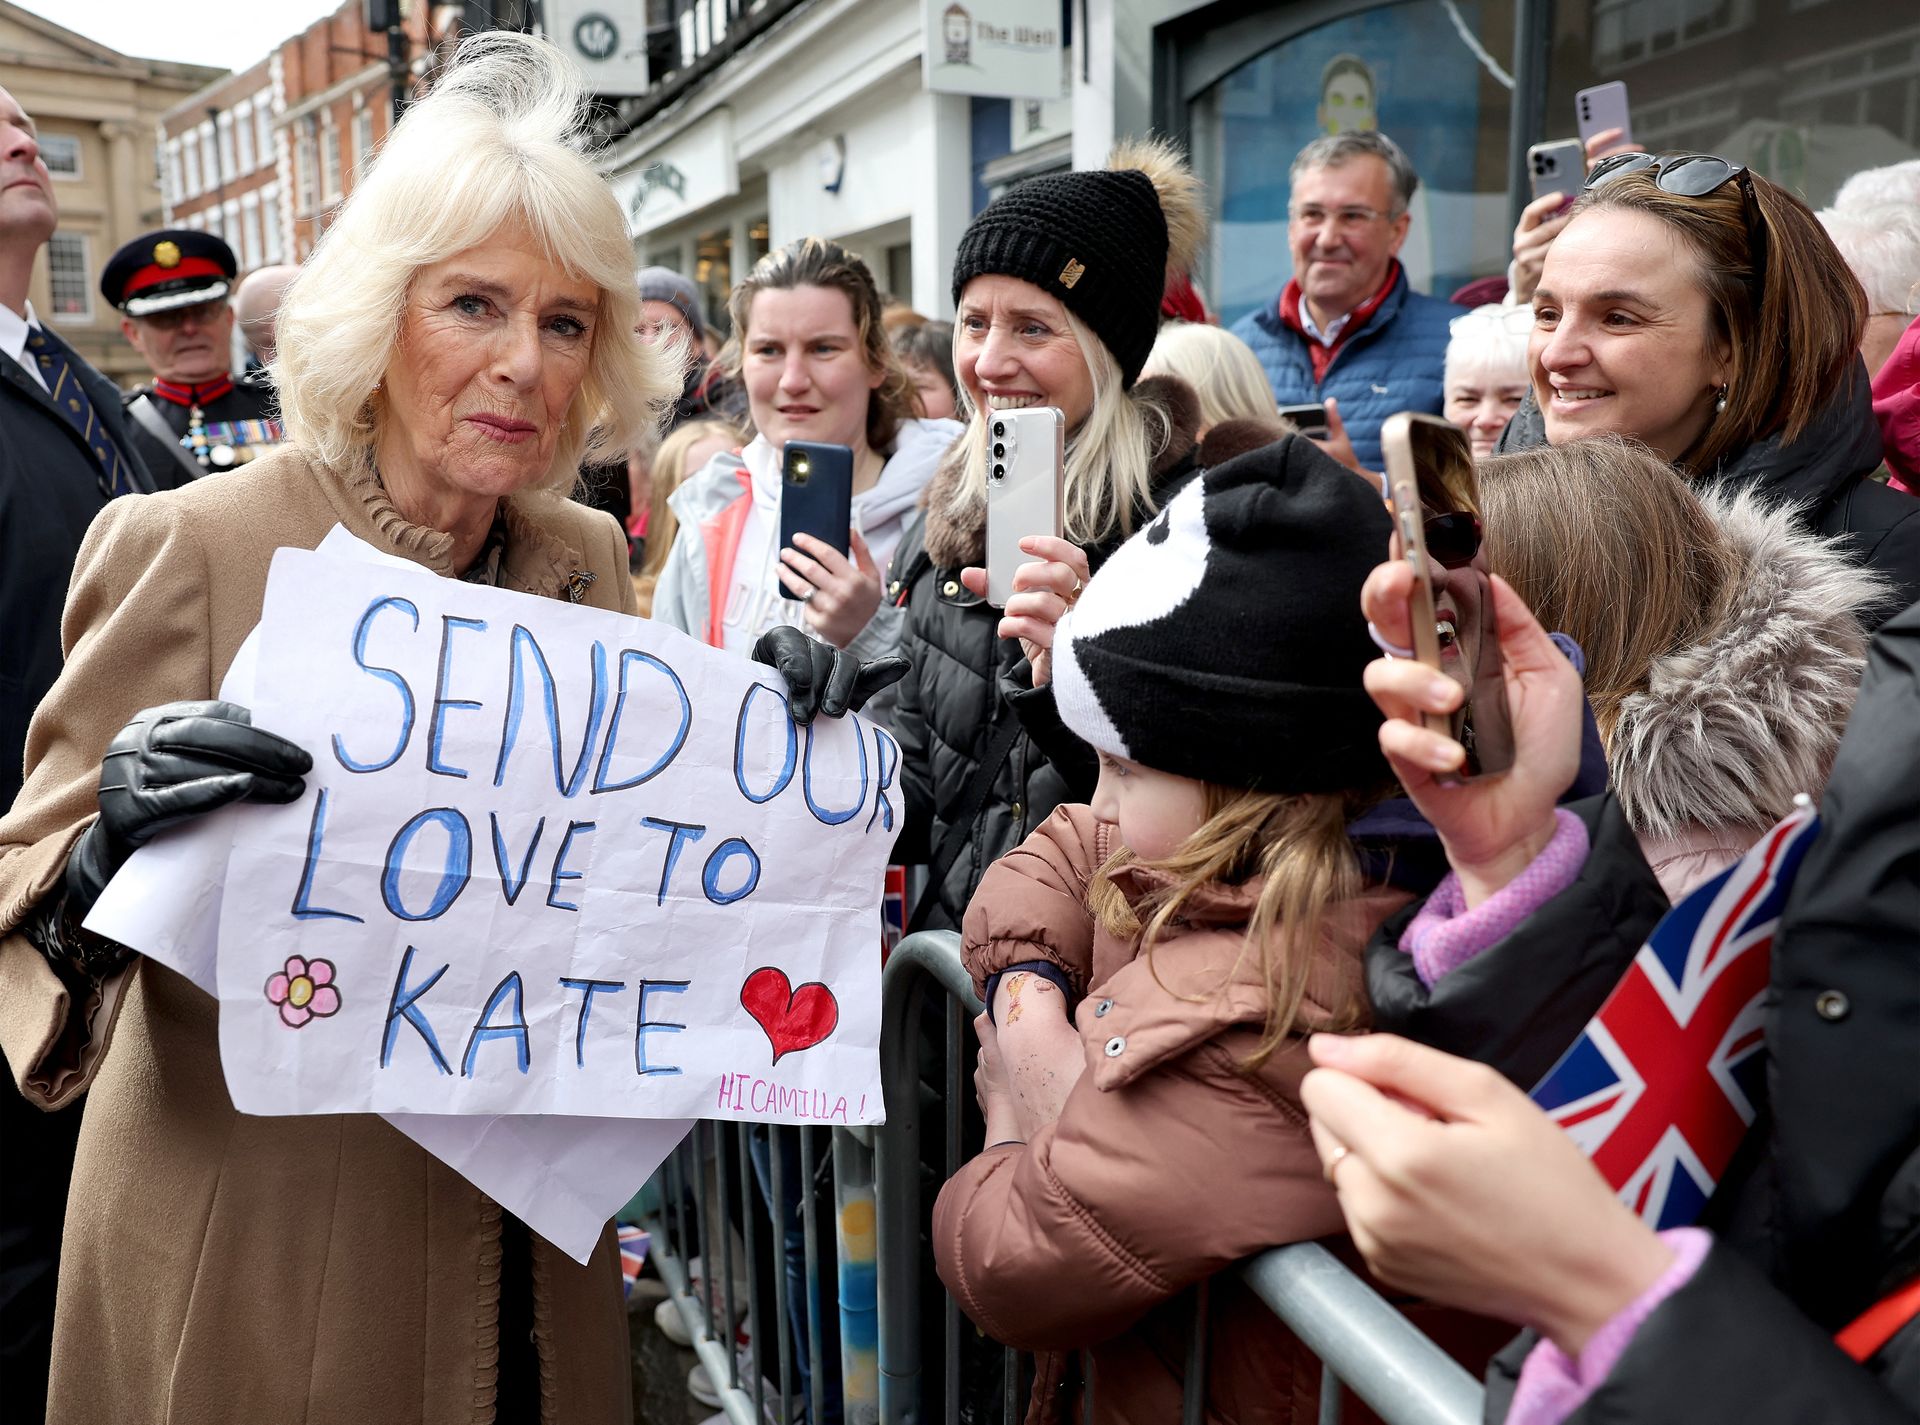 Koningin Camilla houdt tijdens haar bezoek aan de Farmers' Market op woensdag een spandoek vast met de tekst "Send our love to Kate"